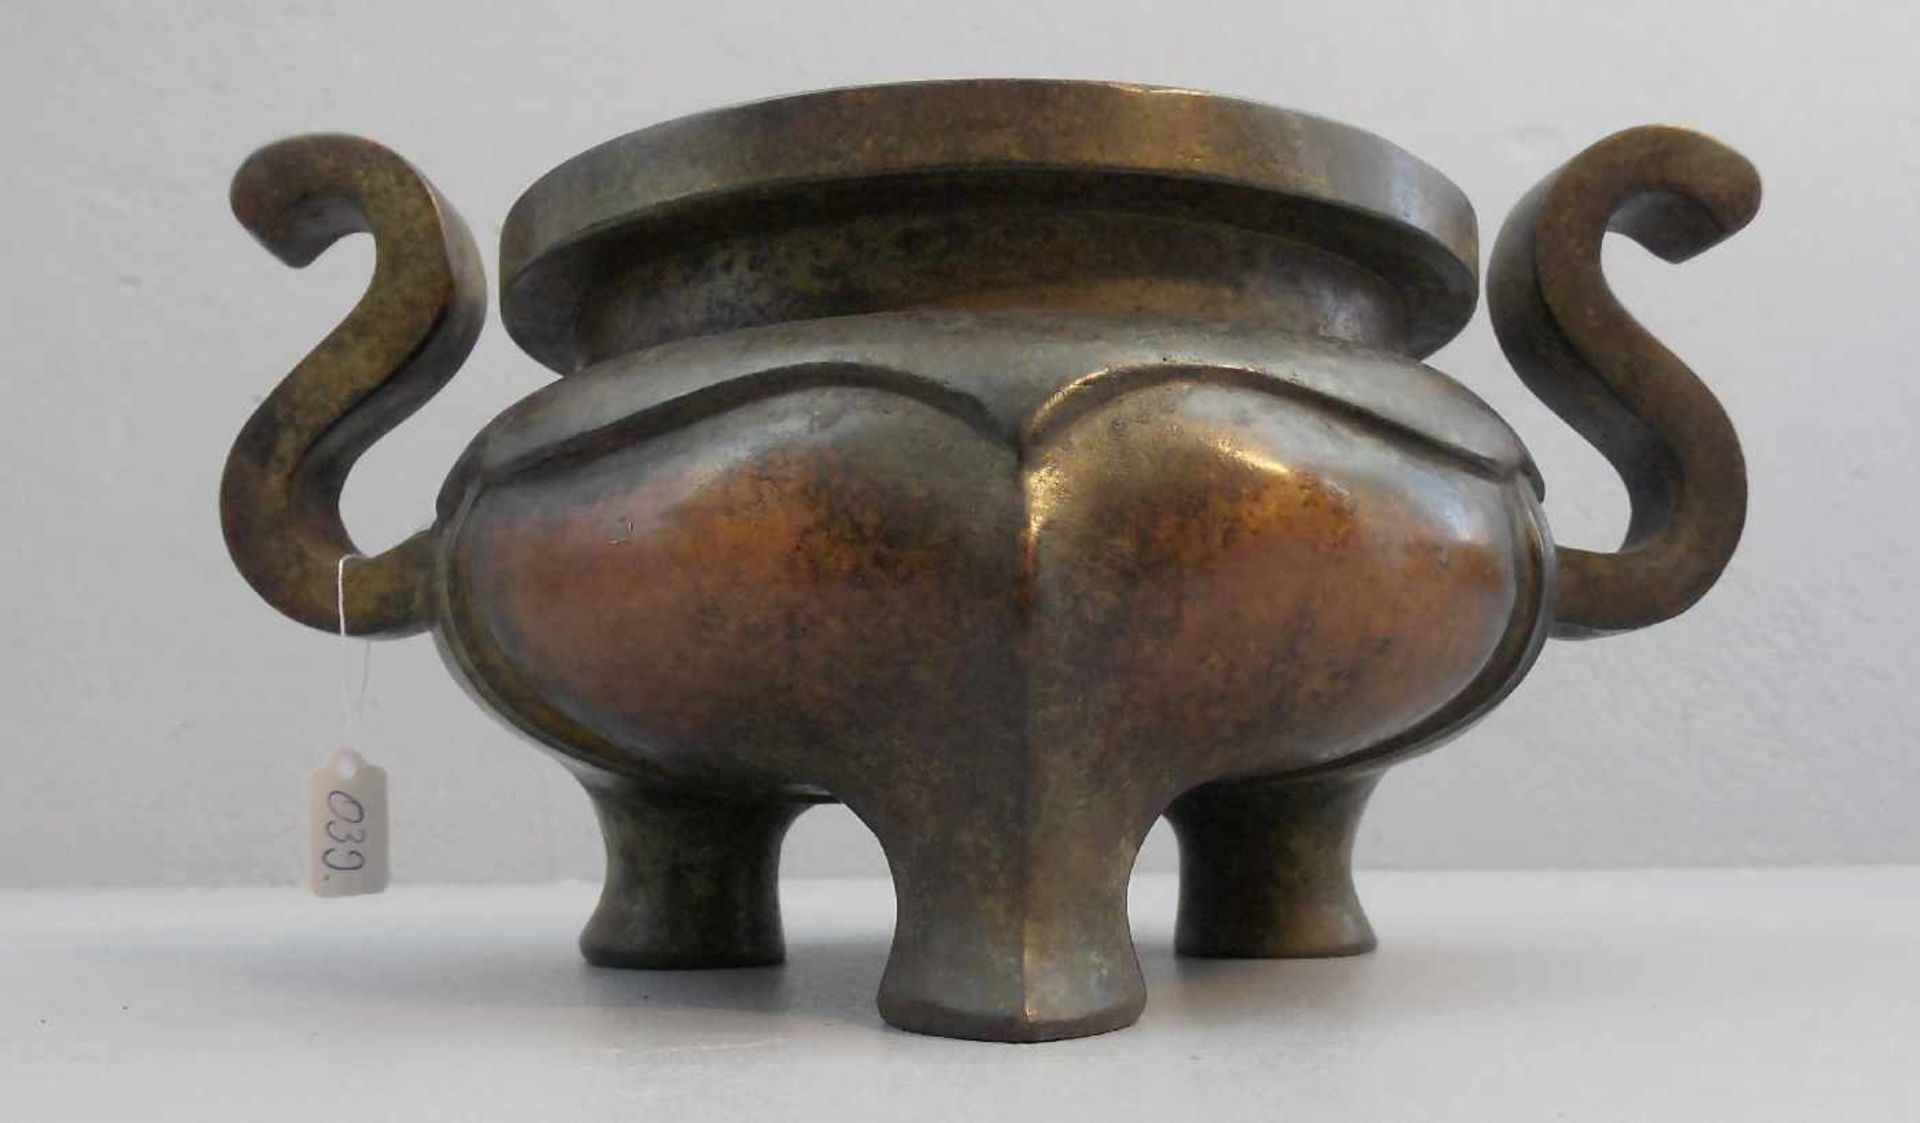 KORO / WEIHRAUCHGEFÄSS / incense holder, China, dunkel patinierte Bronze. Gebauchte Form mit - Bild 3 aus 3